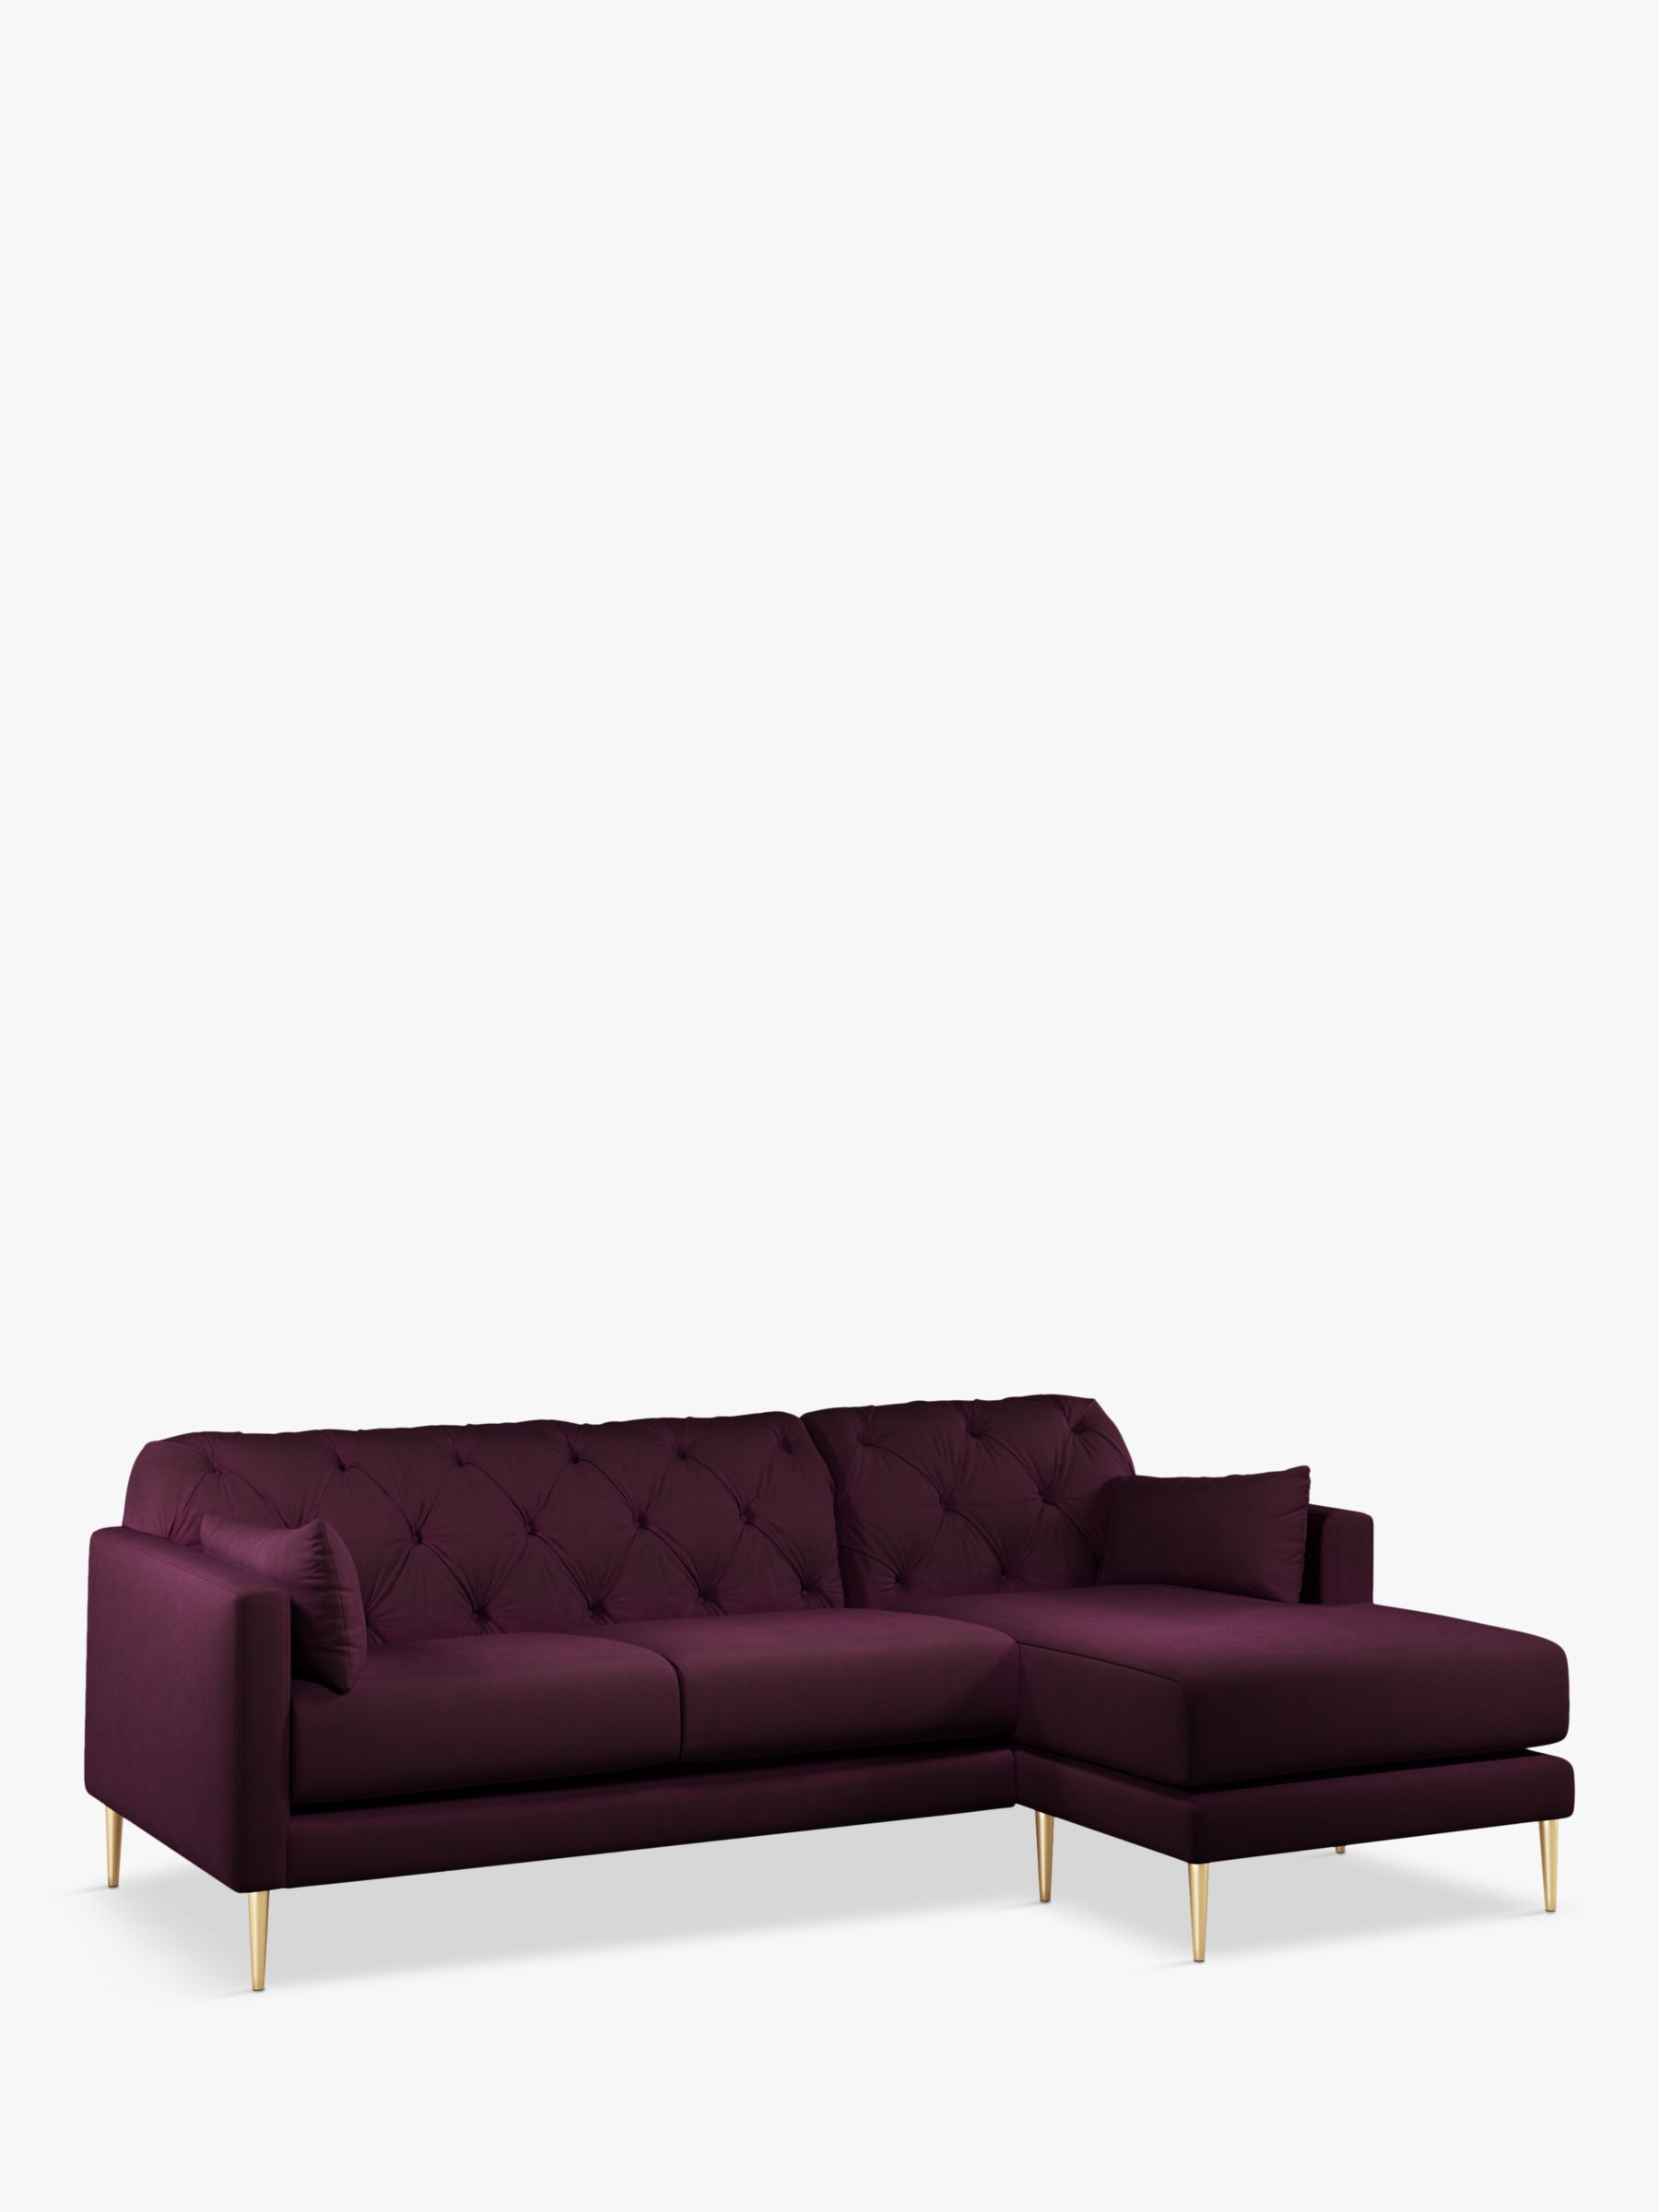 Mendel Range, Swoon Mendel Large 3 Seater RHF Chaise End Sofa, Gold Leg, Damson Purple Velvet